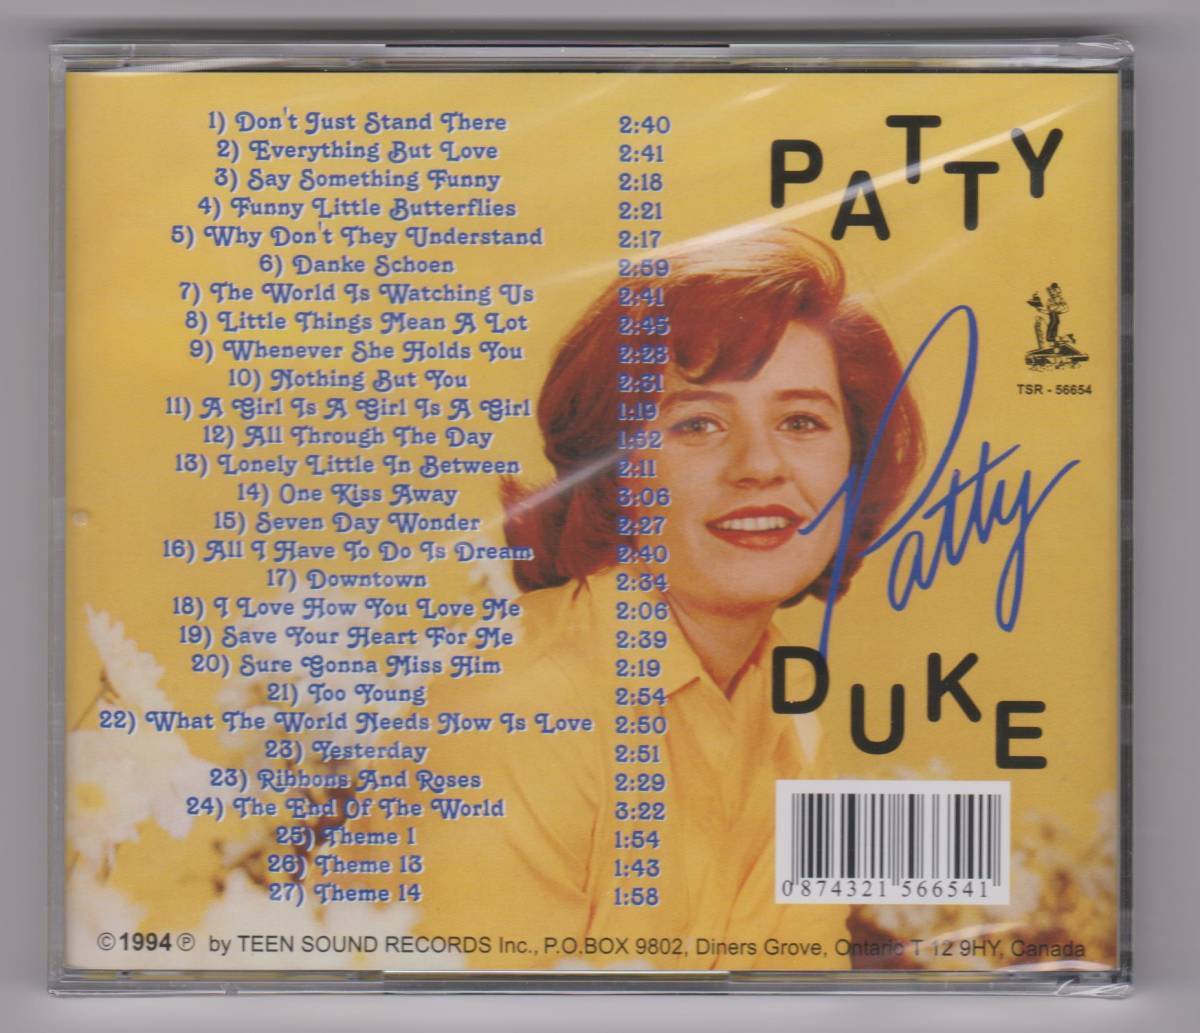 【新品/輸入盤CD】PATTY DUKE/Patty_(出品商品はシールド状態です)